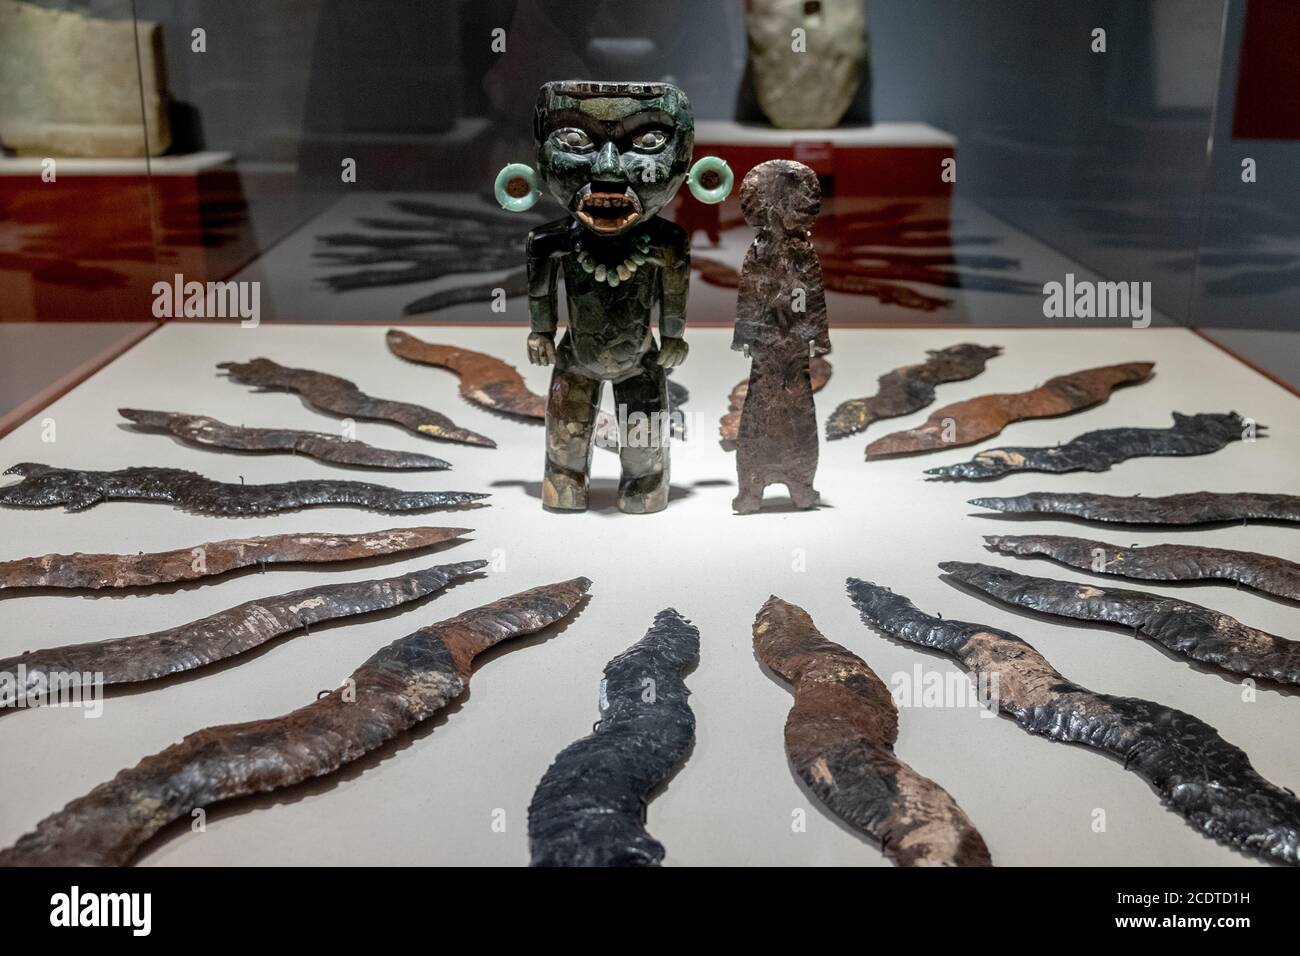 Mosaik stehende Figuren in Serpentin, Grünstein und Muschel aus Teotihuacan, Mexiko Stockfoto